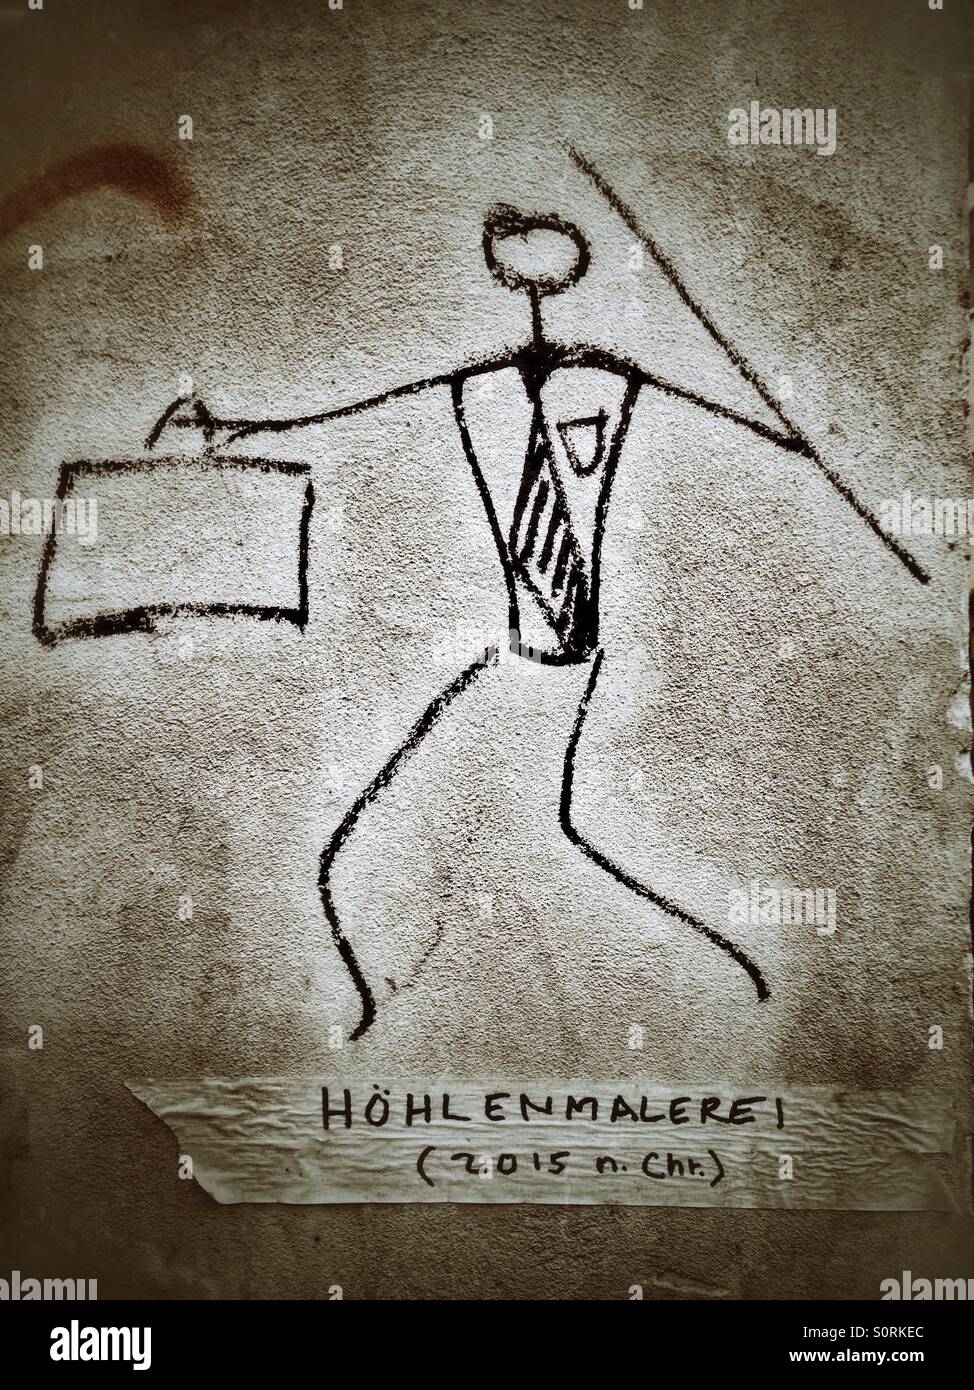 Un graffiti di una grotta moderno Uomo con valigetta e spear, Tedesco didascalia recita: pittura rupestre (2015 AD) Foto Stock